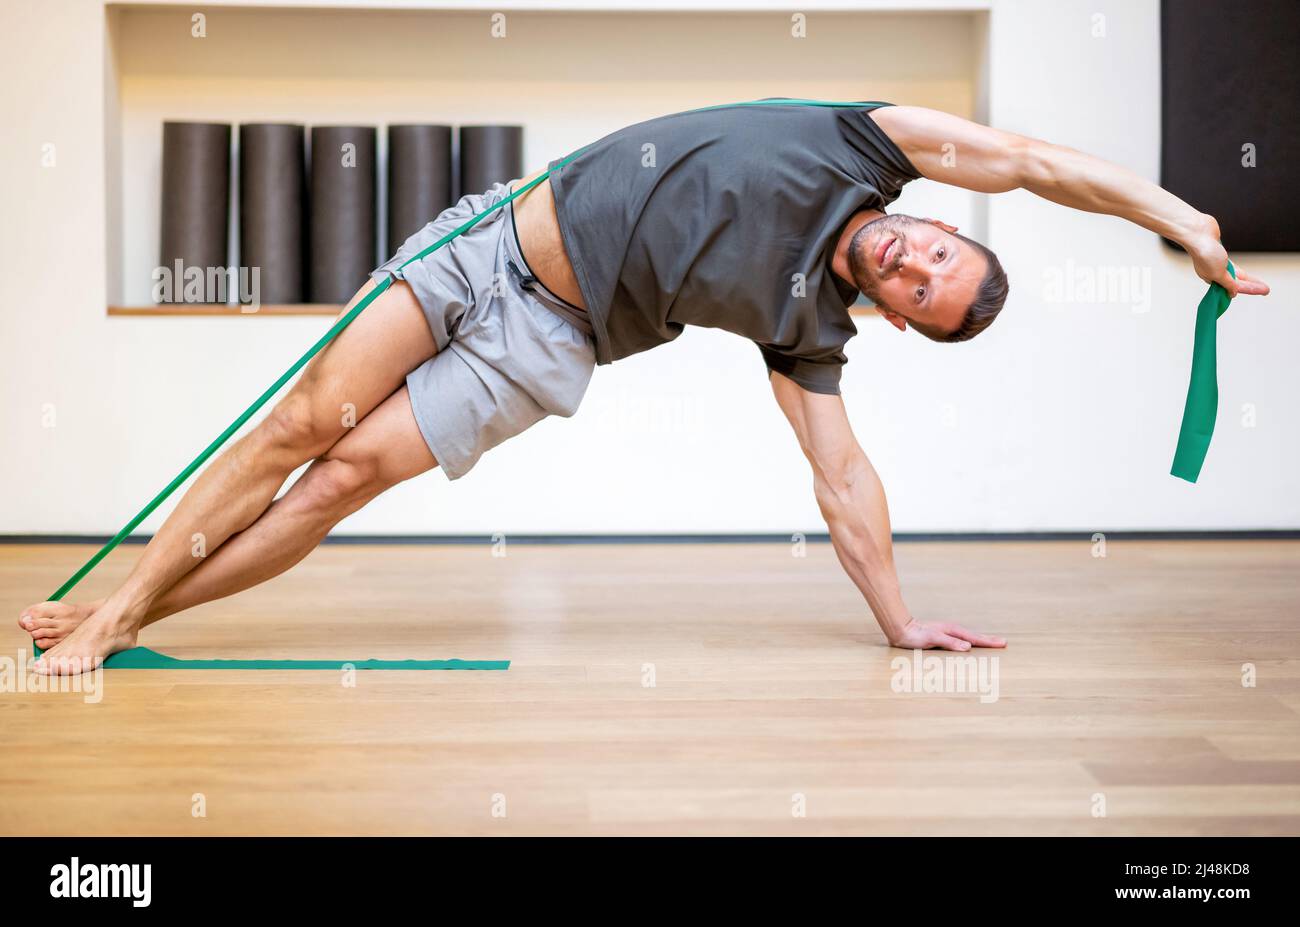 Ajuster musclé homme faisant un exercice de bande de résistance dans une longueur d'étirement de côté pour renforcer et tonifier ses muscles de noyau Banque D'Images